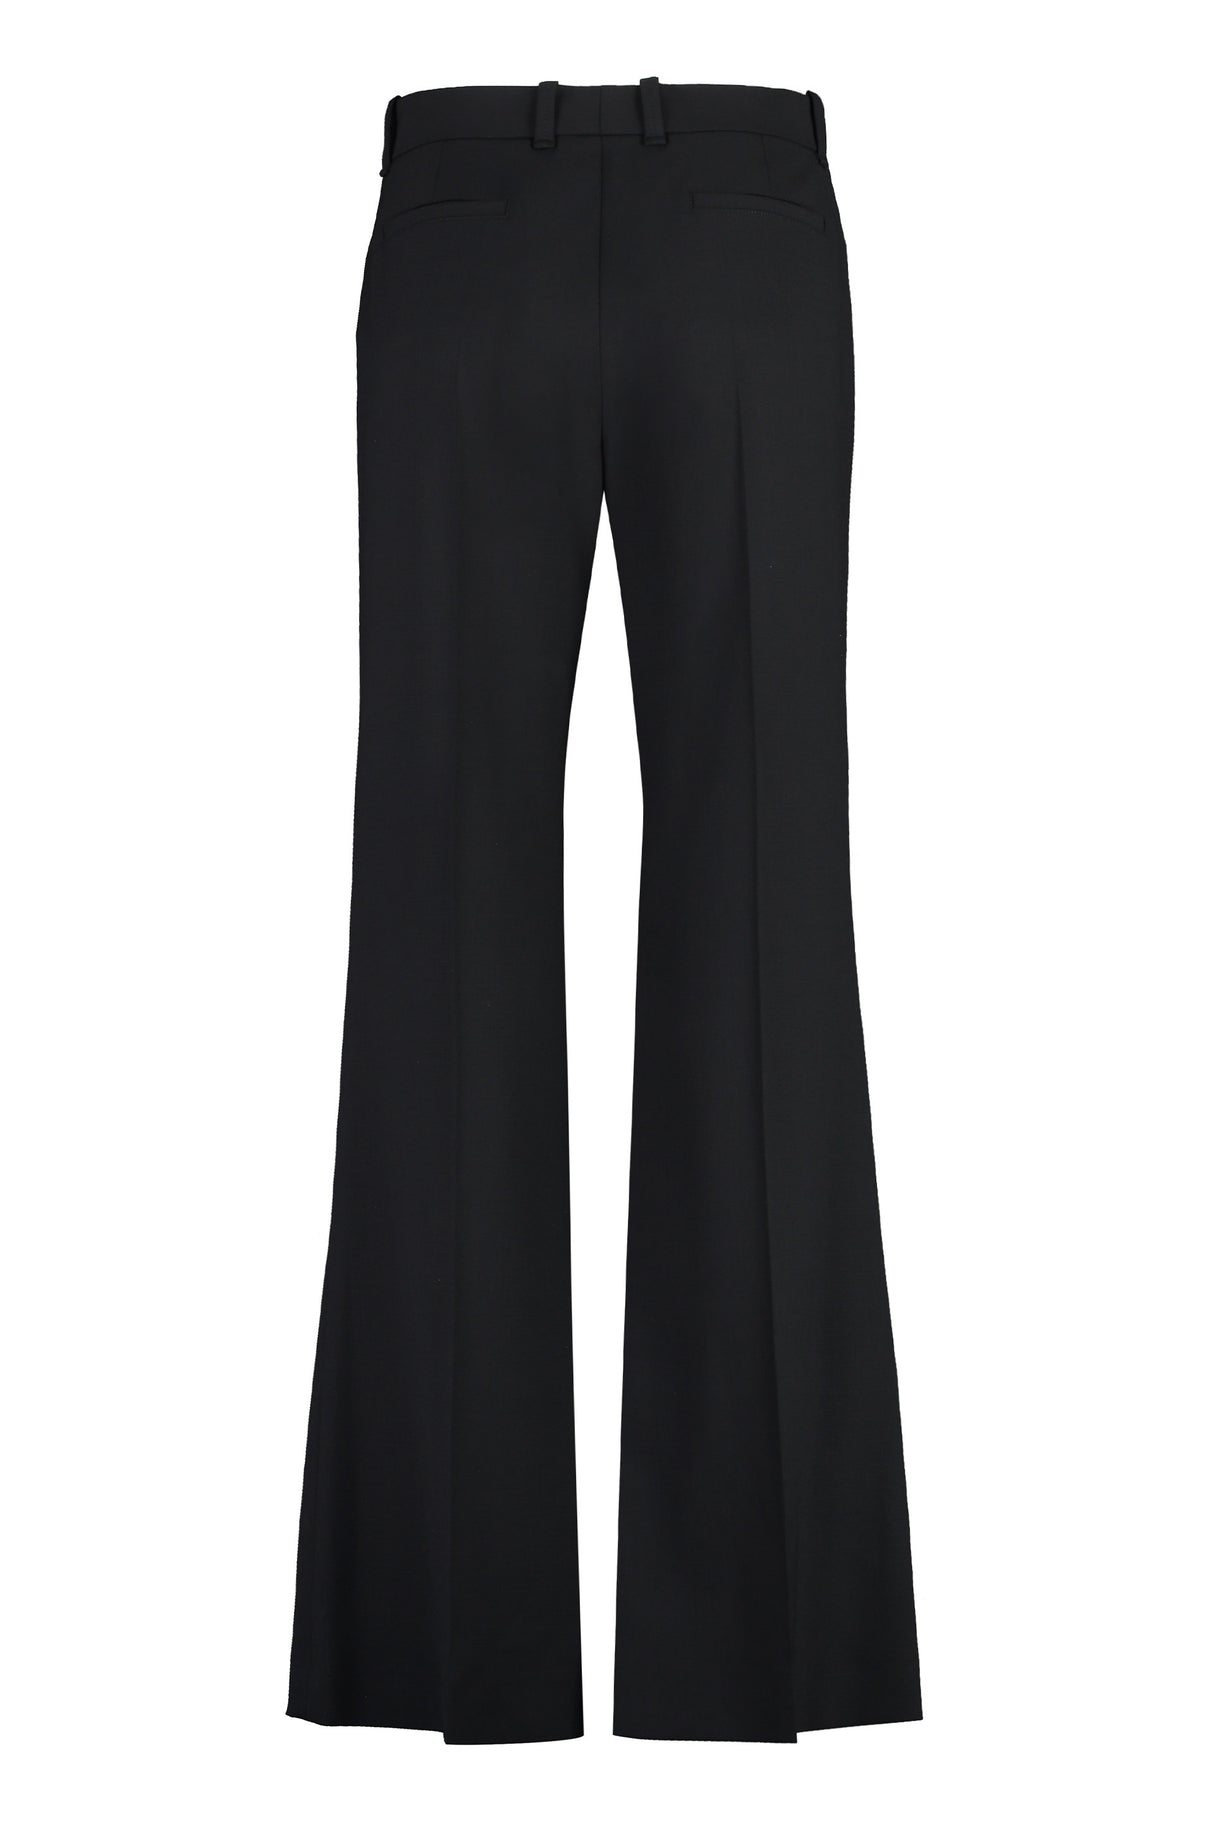 时尚优雅黑色喇叭裤- 御用品牌CHLOÉ的FW23系列